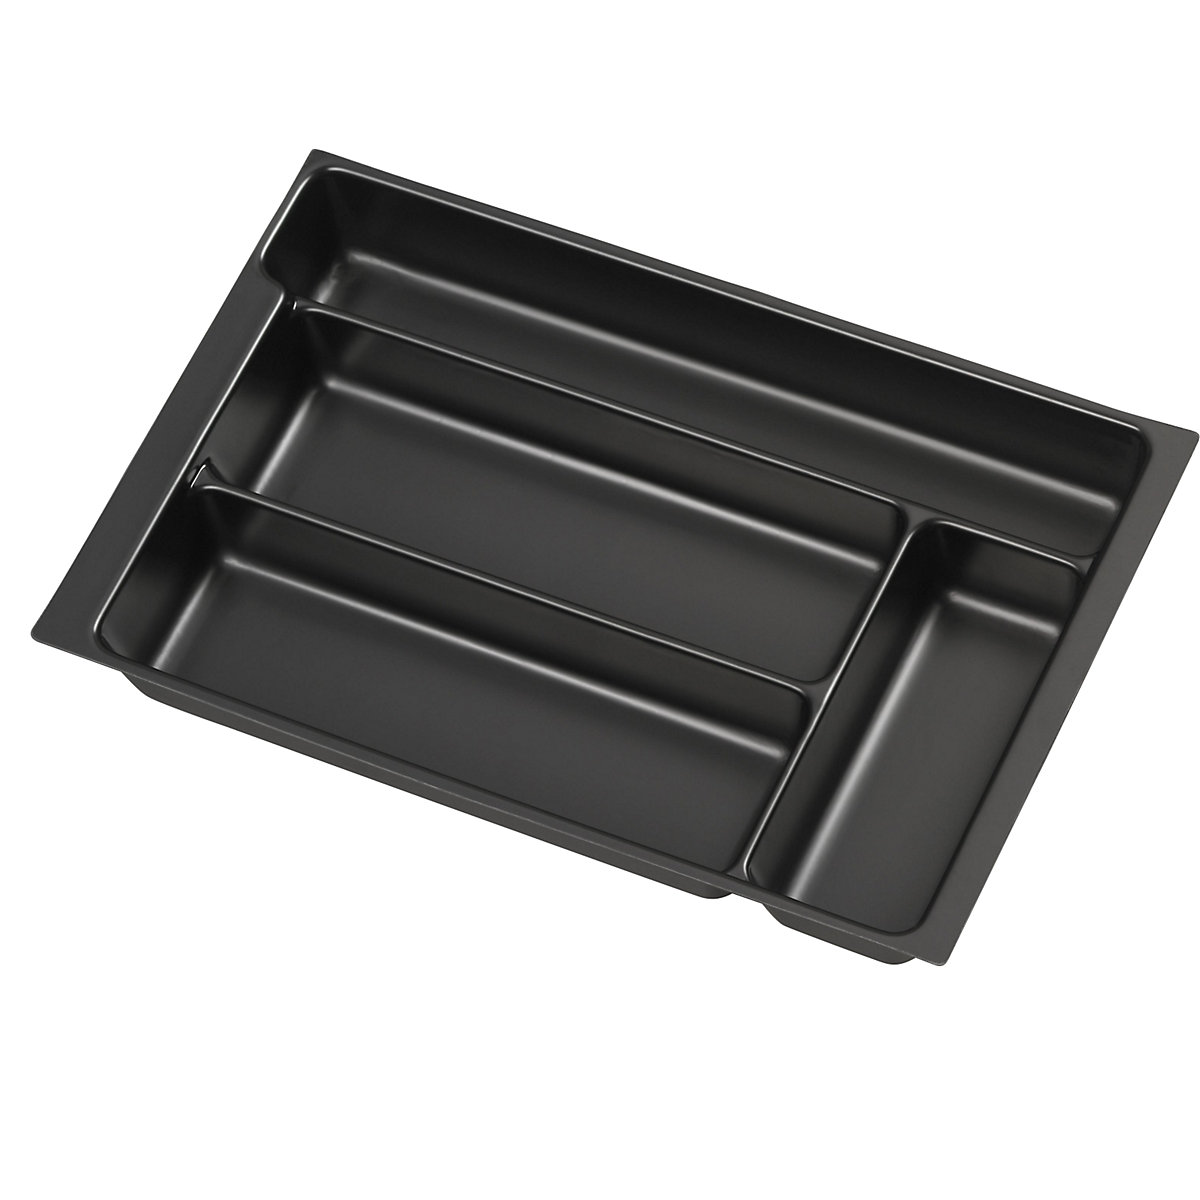 Compartimentation pour tiroir MultiDrawer™ – BISLEY, format A4, hauteur 48 mm, 4 casiers (en longueur)